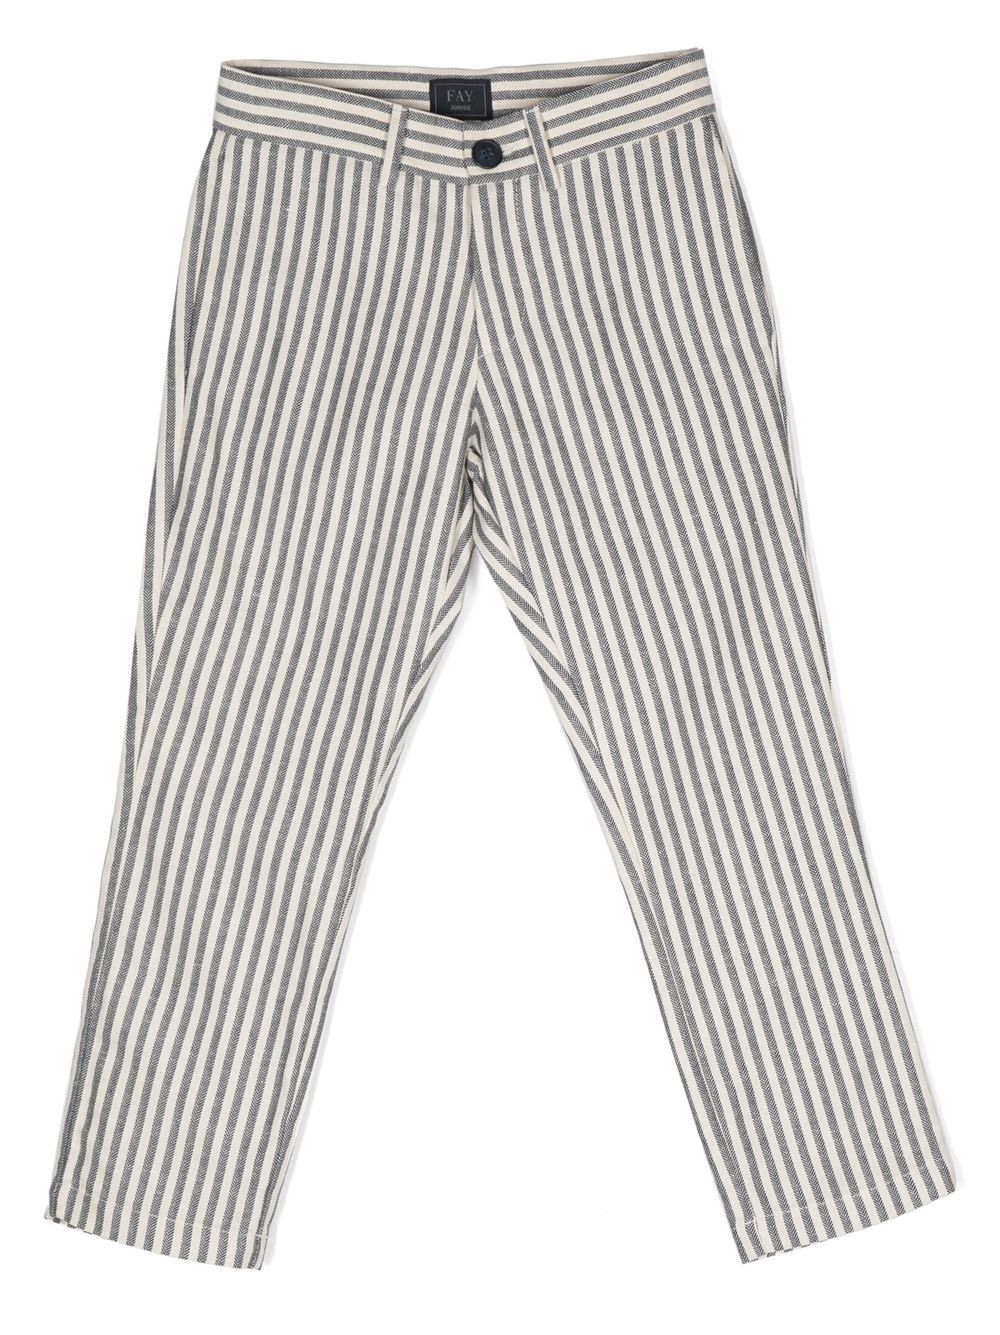 Fay Kids stripe-print cotton-linen trousers - Blue von Fay Kids